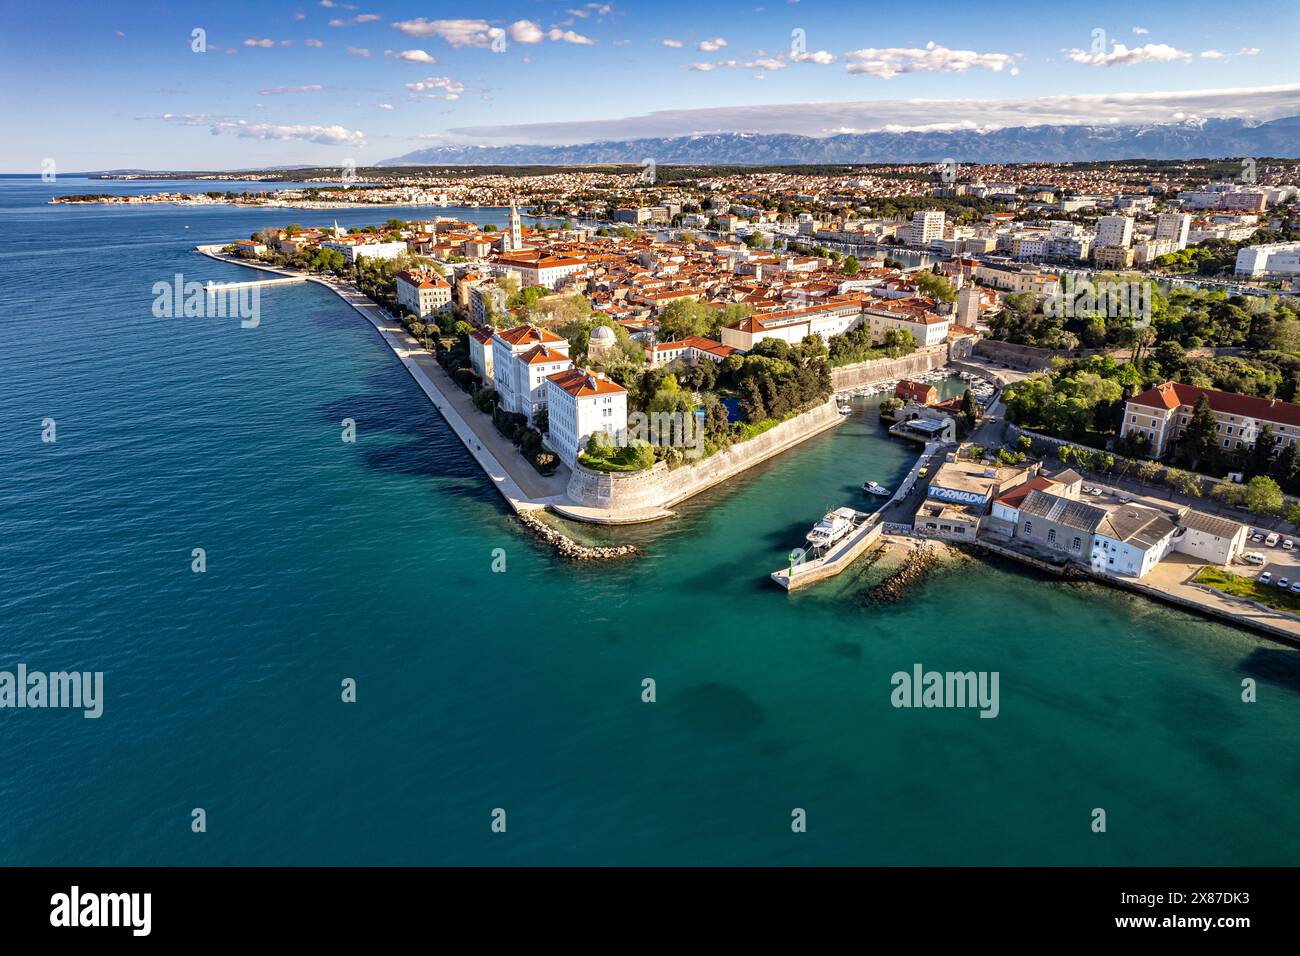 Zadar von oben gesehen, Kroatien, Europe Banque D'Images